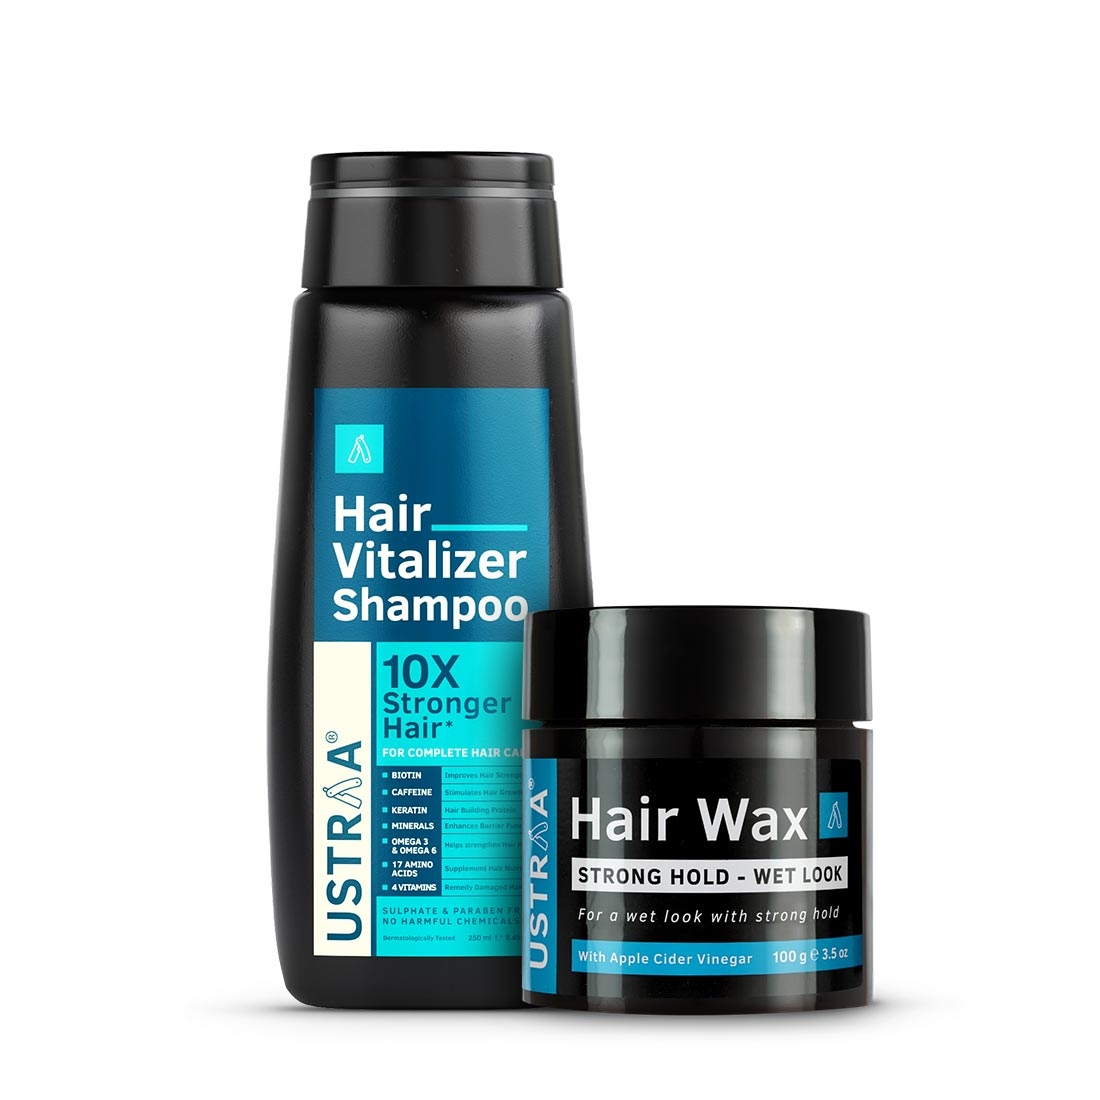 Ustraa | Ustraa Hair Vitalizer Shampoo - 250ml & Hair Wax - Strong Hold, Wet Look - 100g